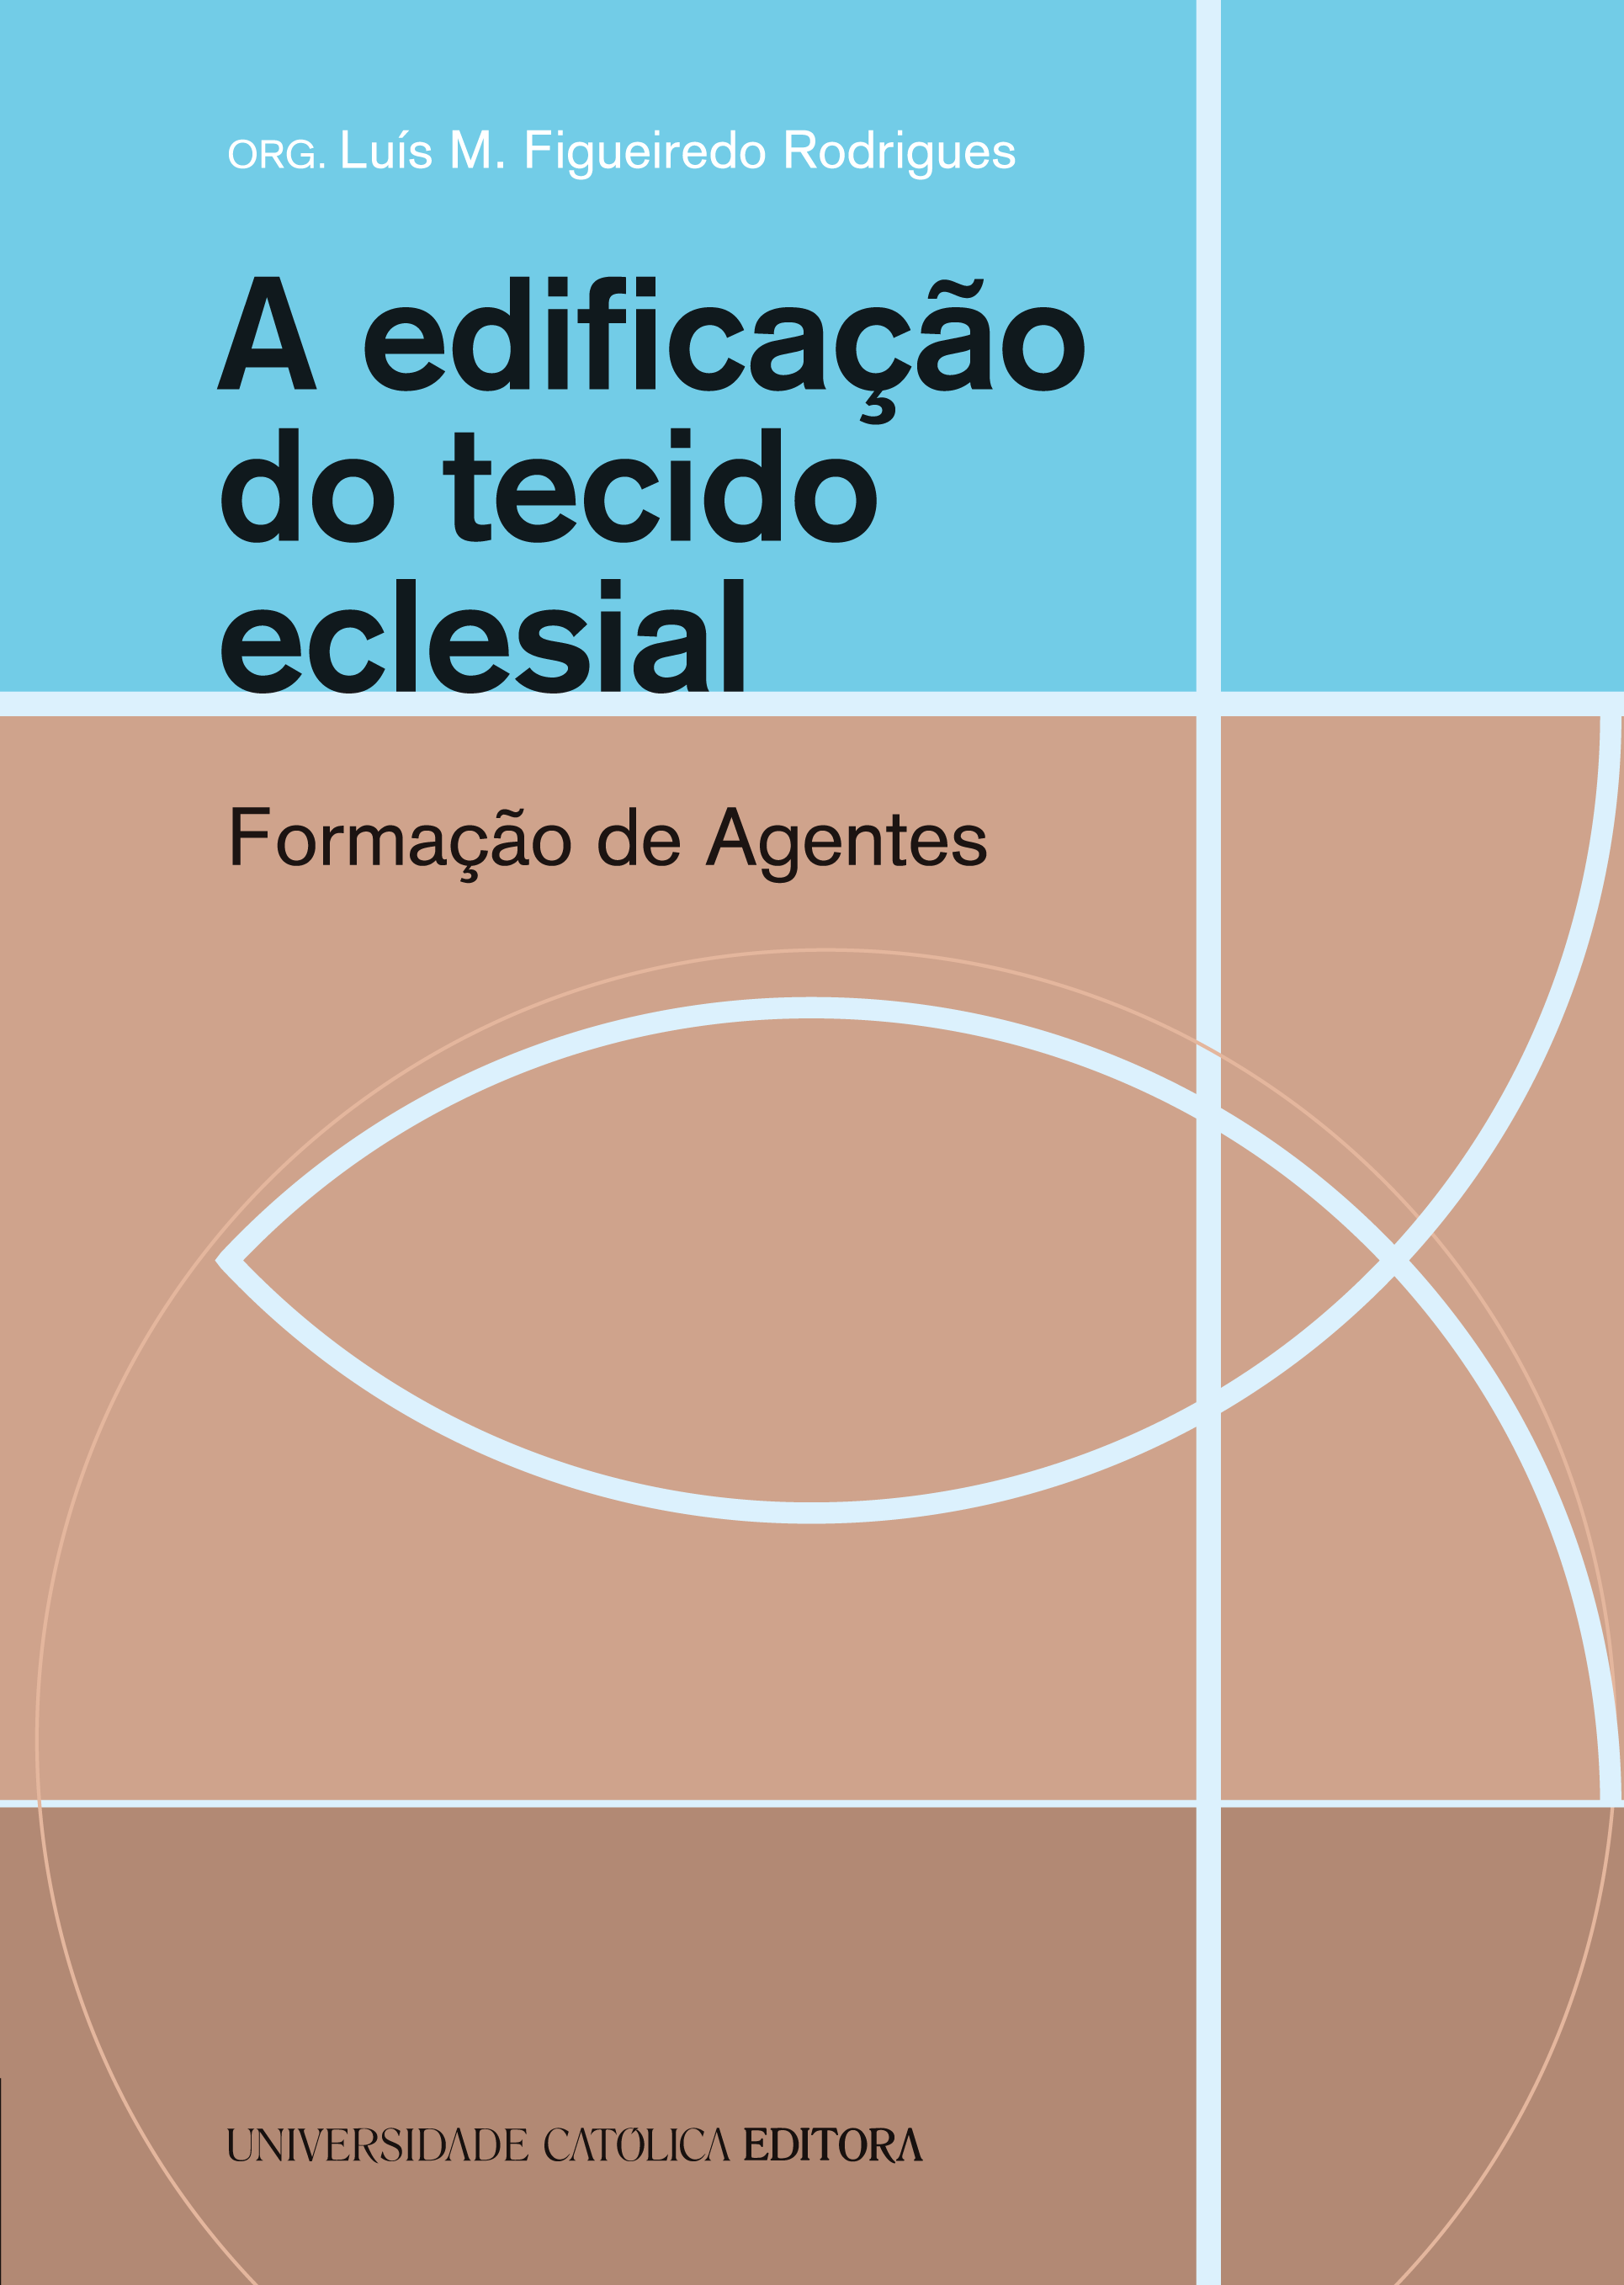 A EDIFICAÇÃO DO TECIDO ECLESIAL - Formação de Agentes - Universidade Católica Editora